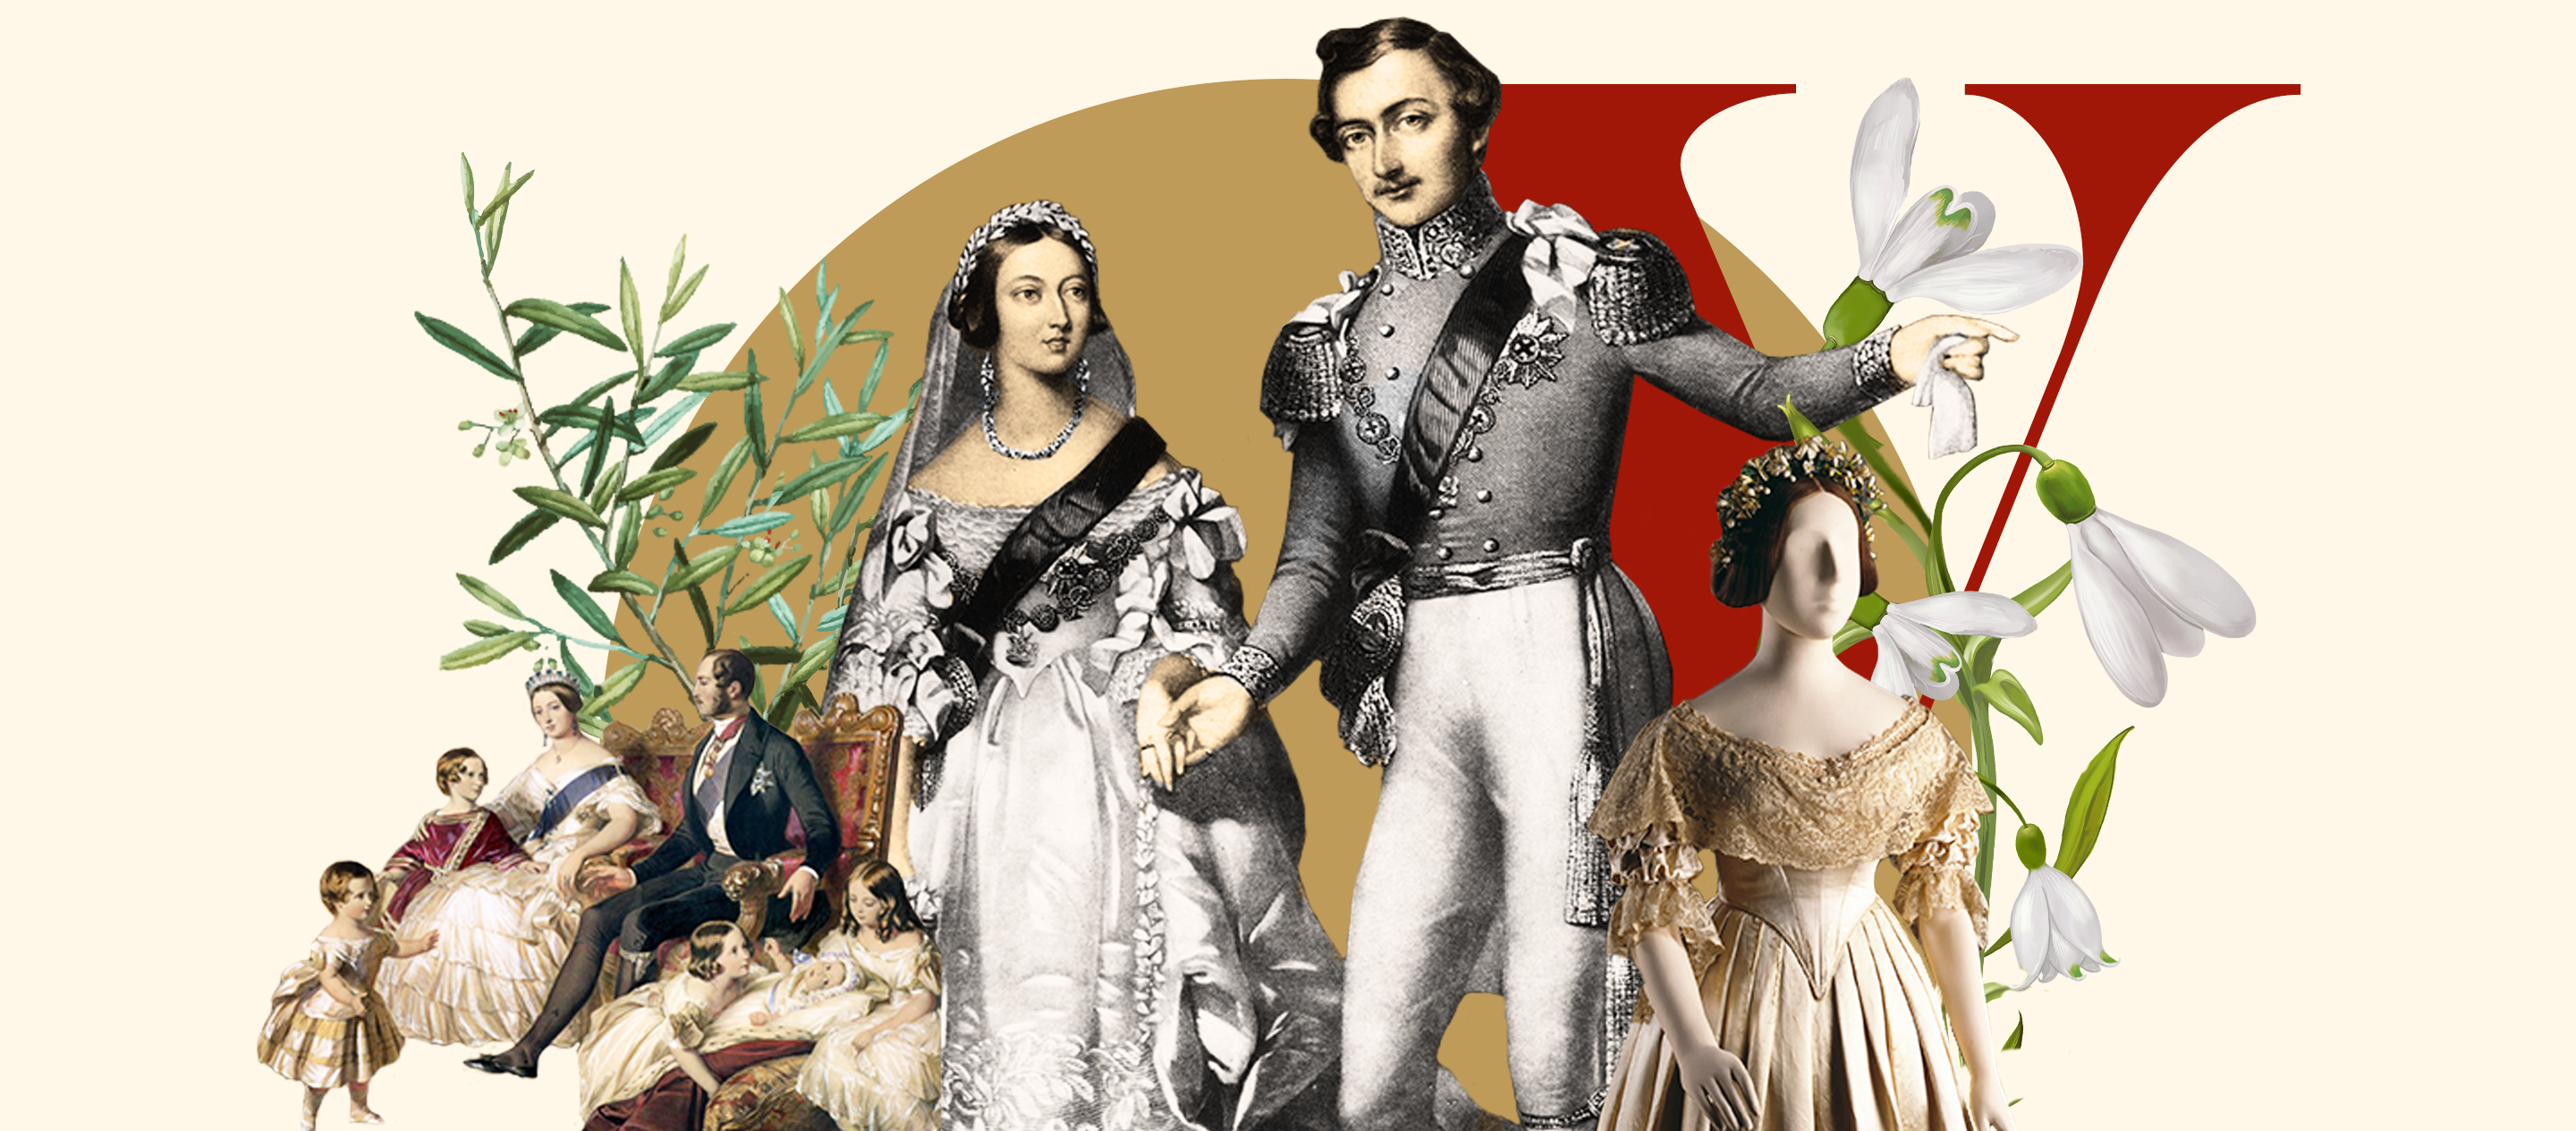 อดีต | ของ | ปัจจุบัน EP.10 Queen Victoria’s Wedding Dress ธรรมเนียมชุดแต่งงานสีขาว มรดกจากแผนพีอาร์ราชวงศ์อังกฤษ